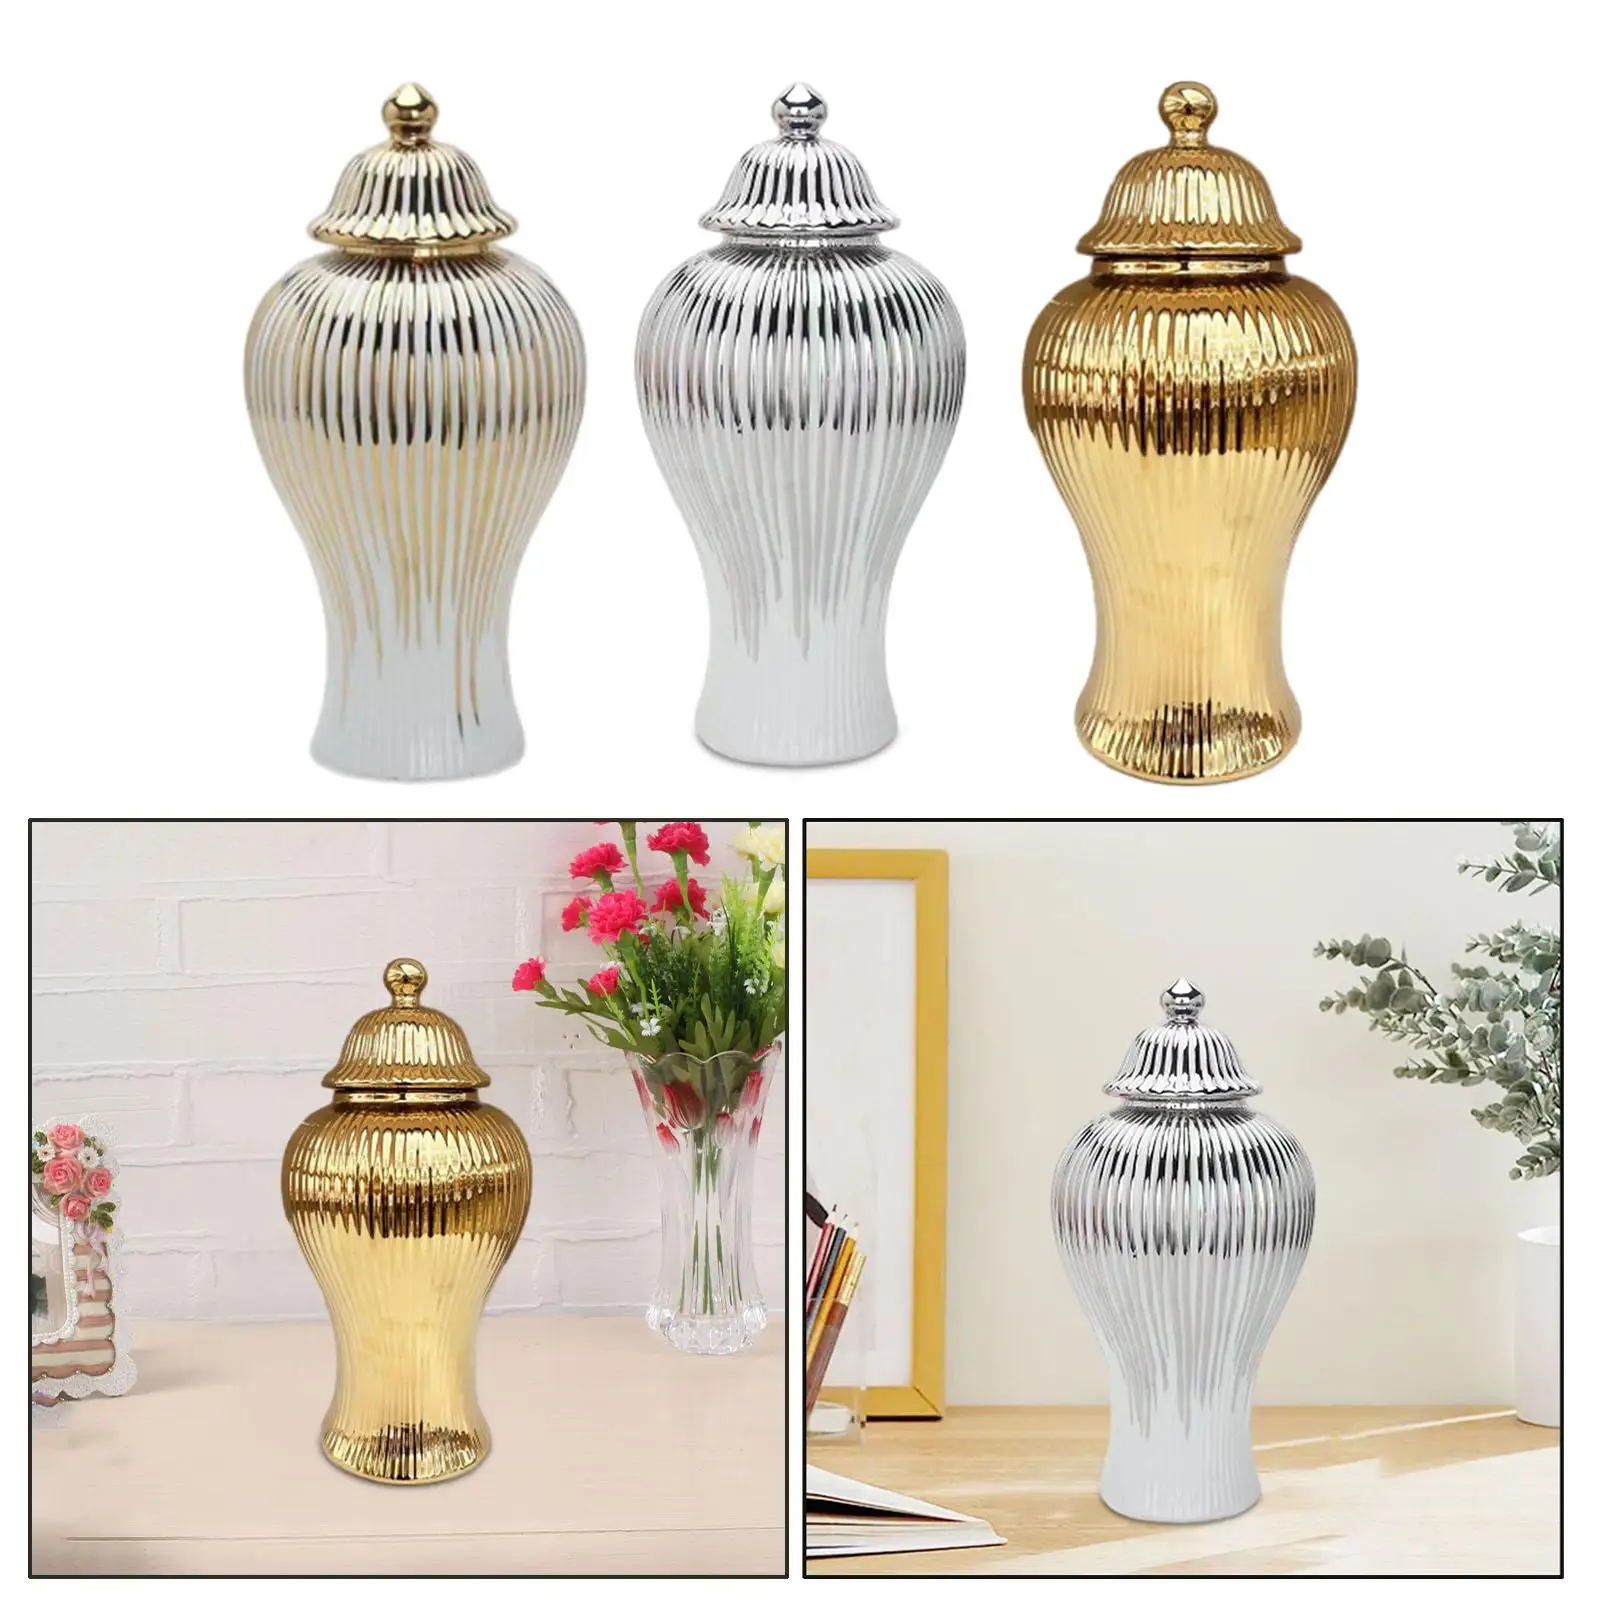 Porcelain Decorative Jar with Lid Modern Floral Arrangement Elegant Ceramic Vase for Entryway Dining Table Bookshelf Home Office